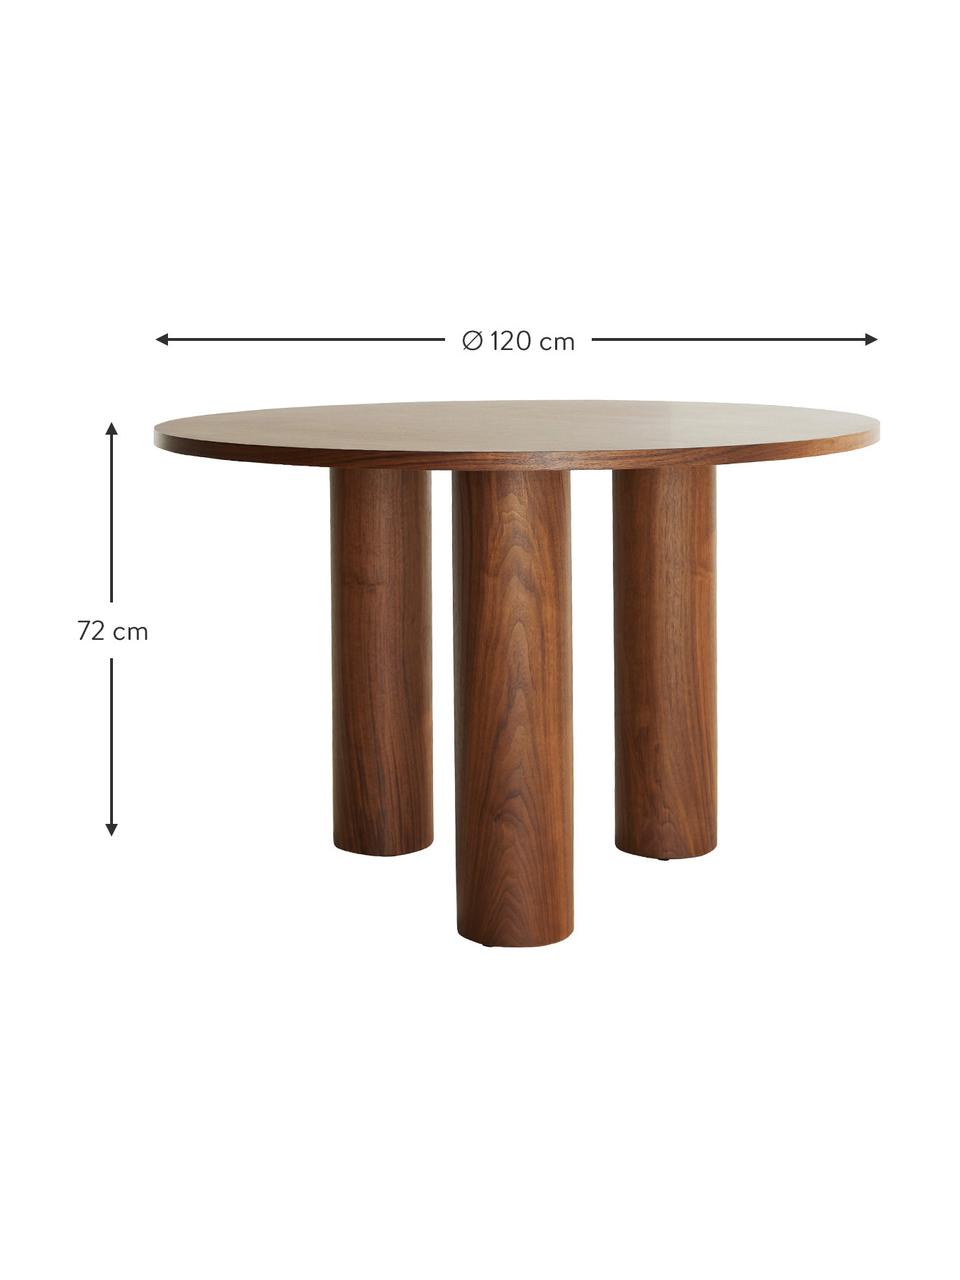 Runder Tisch Colette in Walnuss, Ø 120 cm, Mitteldichte Holzfaserplatte (MDF), mit Walnussholzfurnier, Dunkelbraun, Ø 120 x H 72 cm